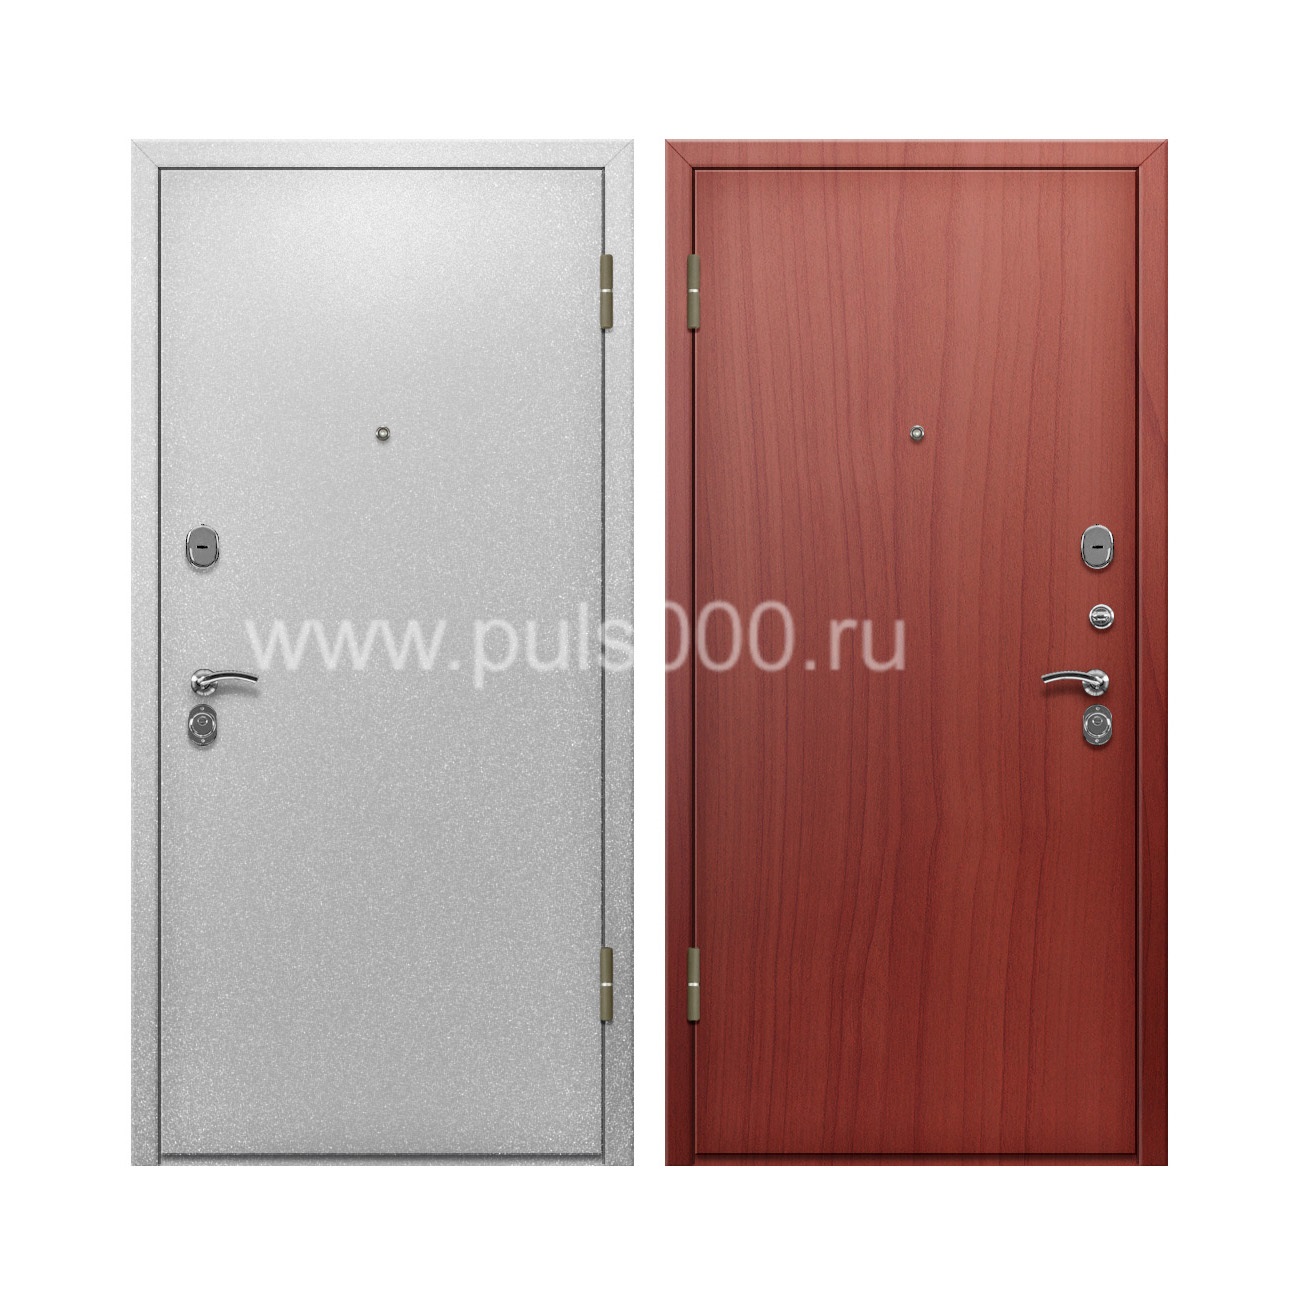 Порошковая дверь с отделкой ламинатом внутри PR-57 , цена 25 000  руб.